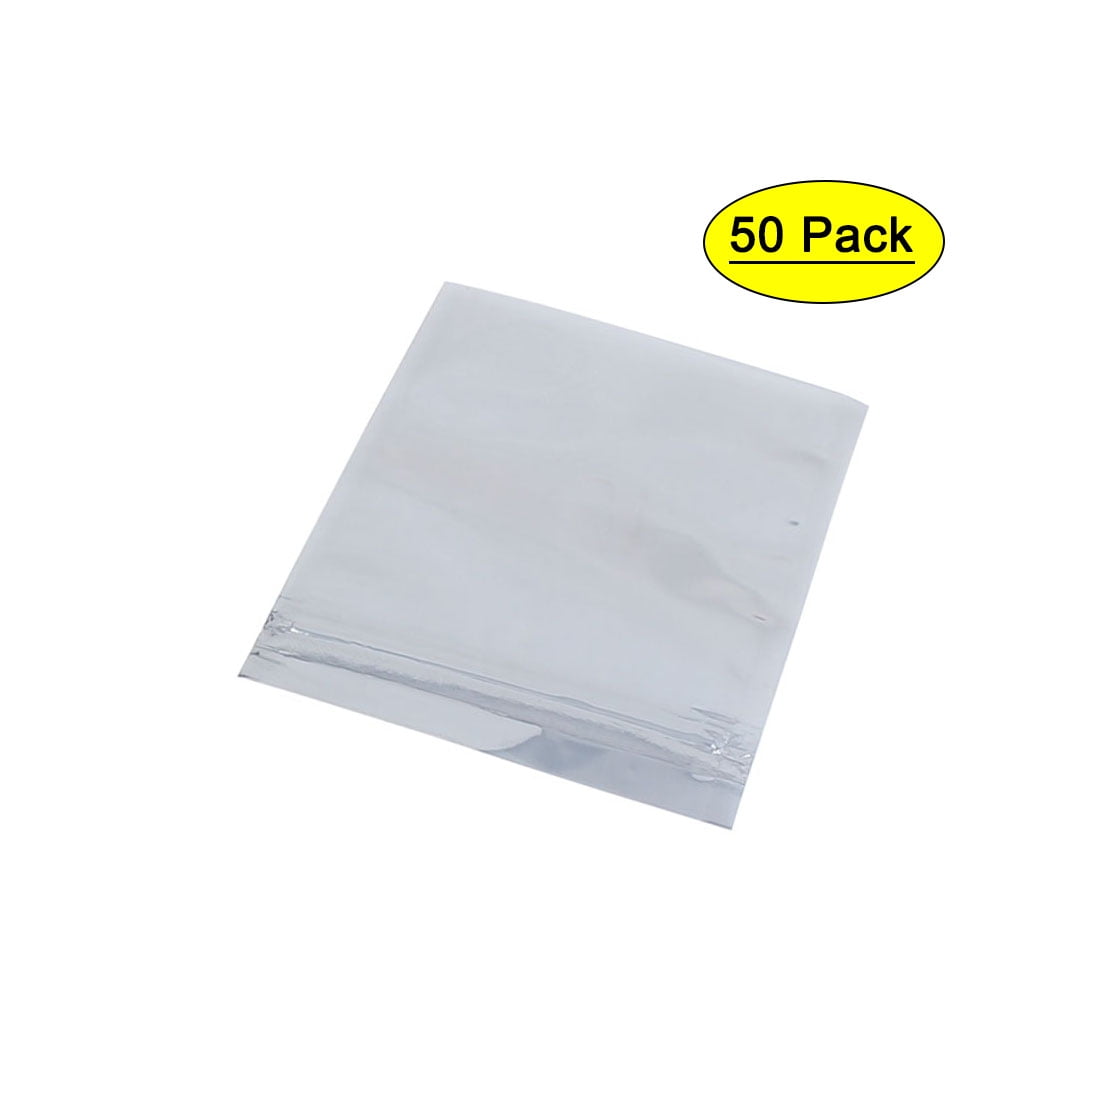 50 Pcs Aluminum Foil Open Top Anti Static Bag 7cmx11.5cm for Mobile Spare Parts